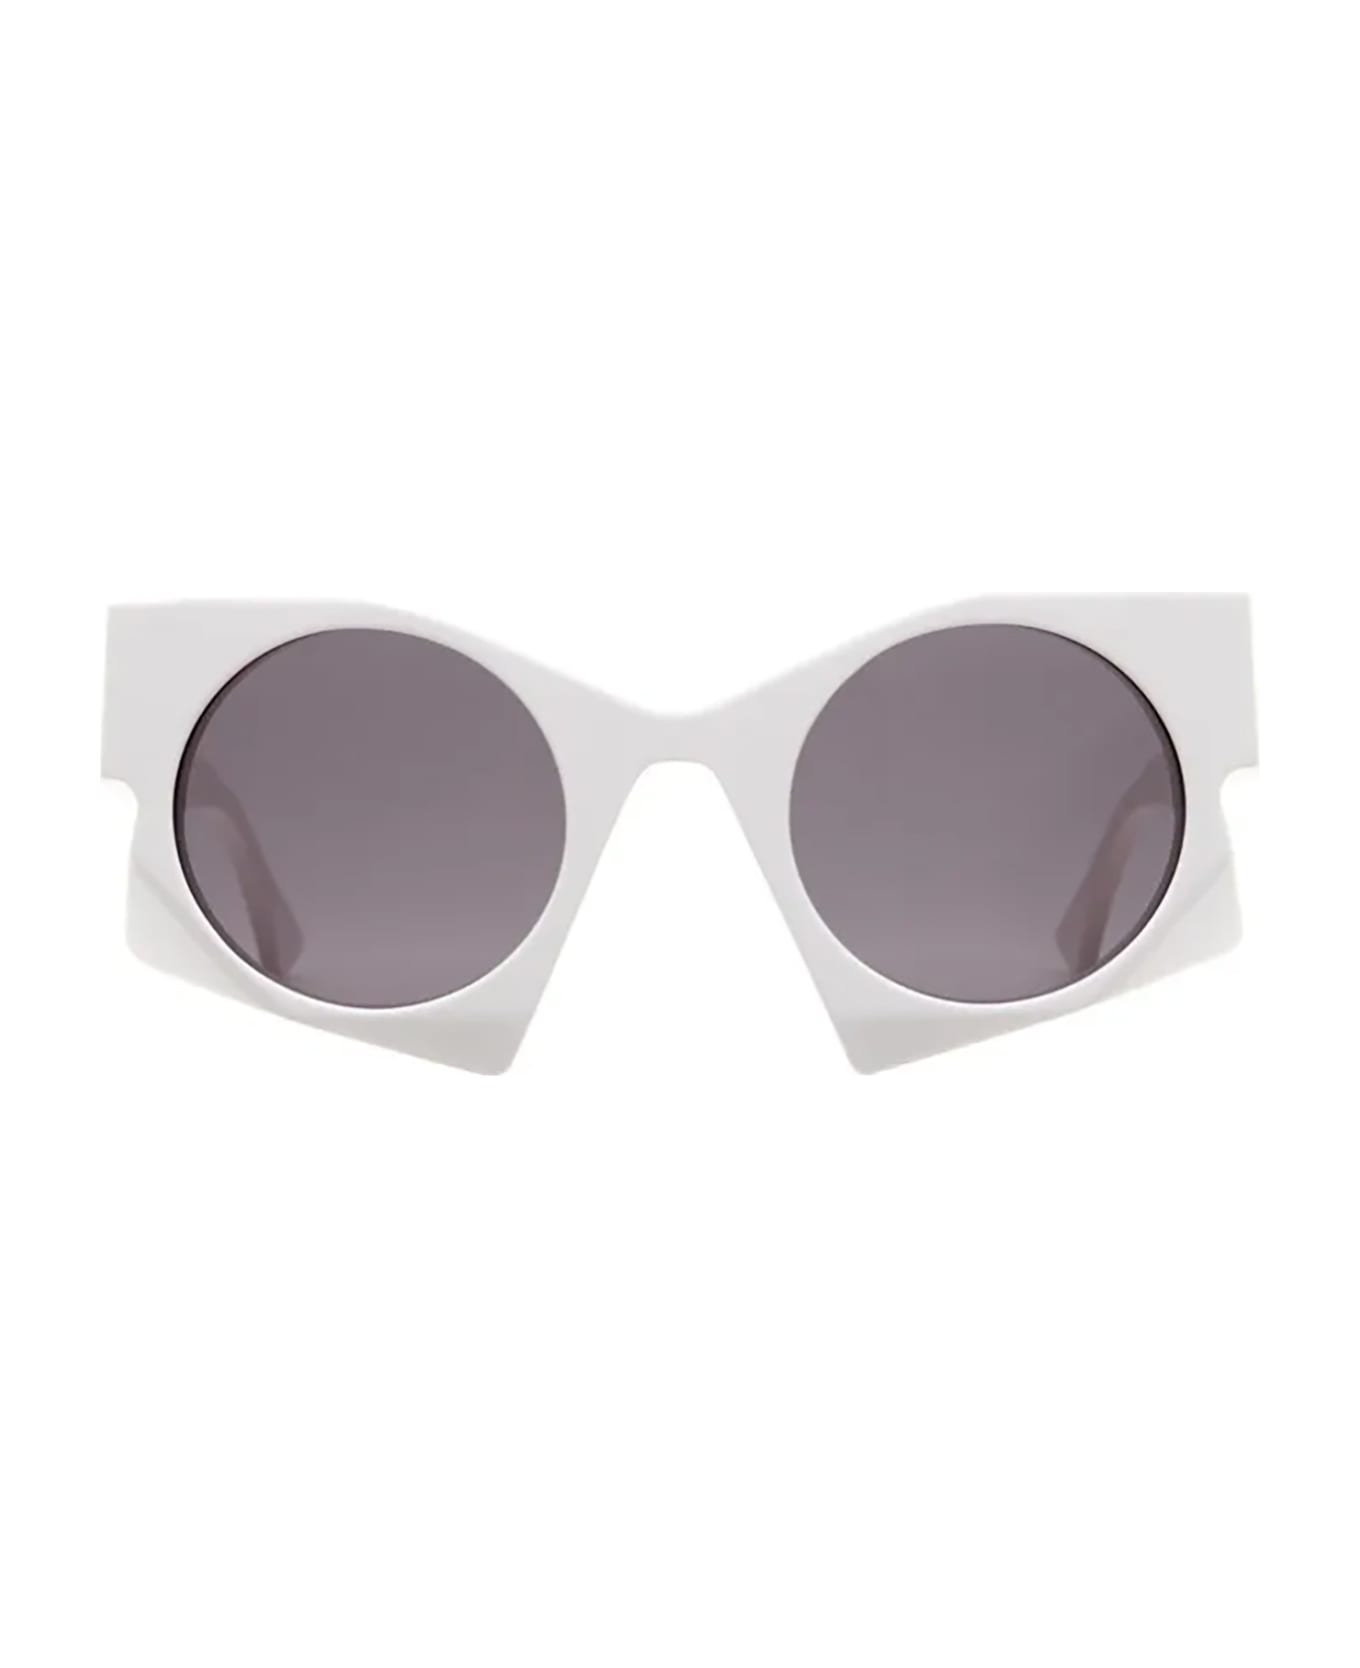 Kuboraum U5 Sunglasses - Grey サングラス